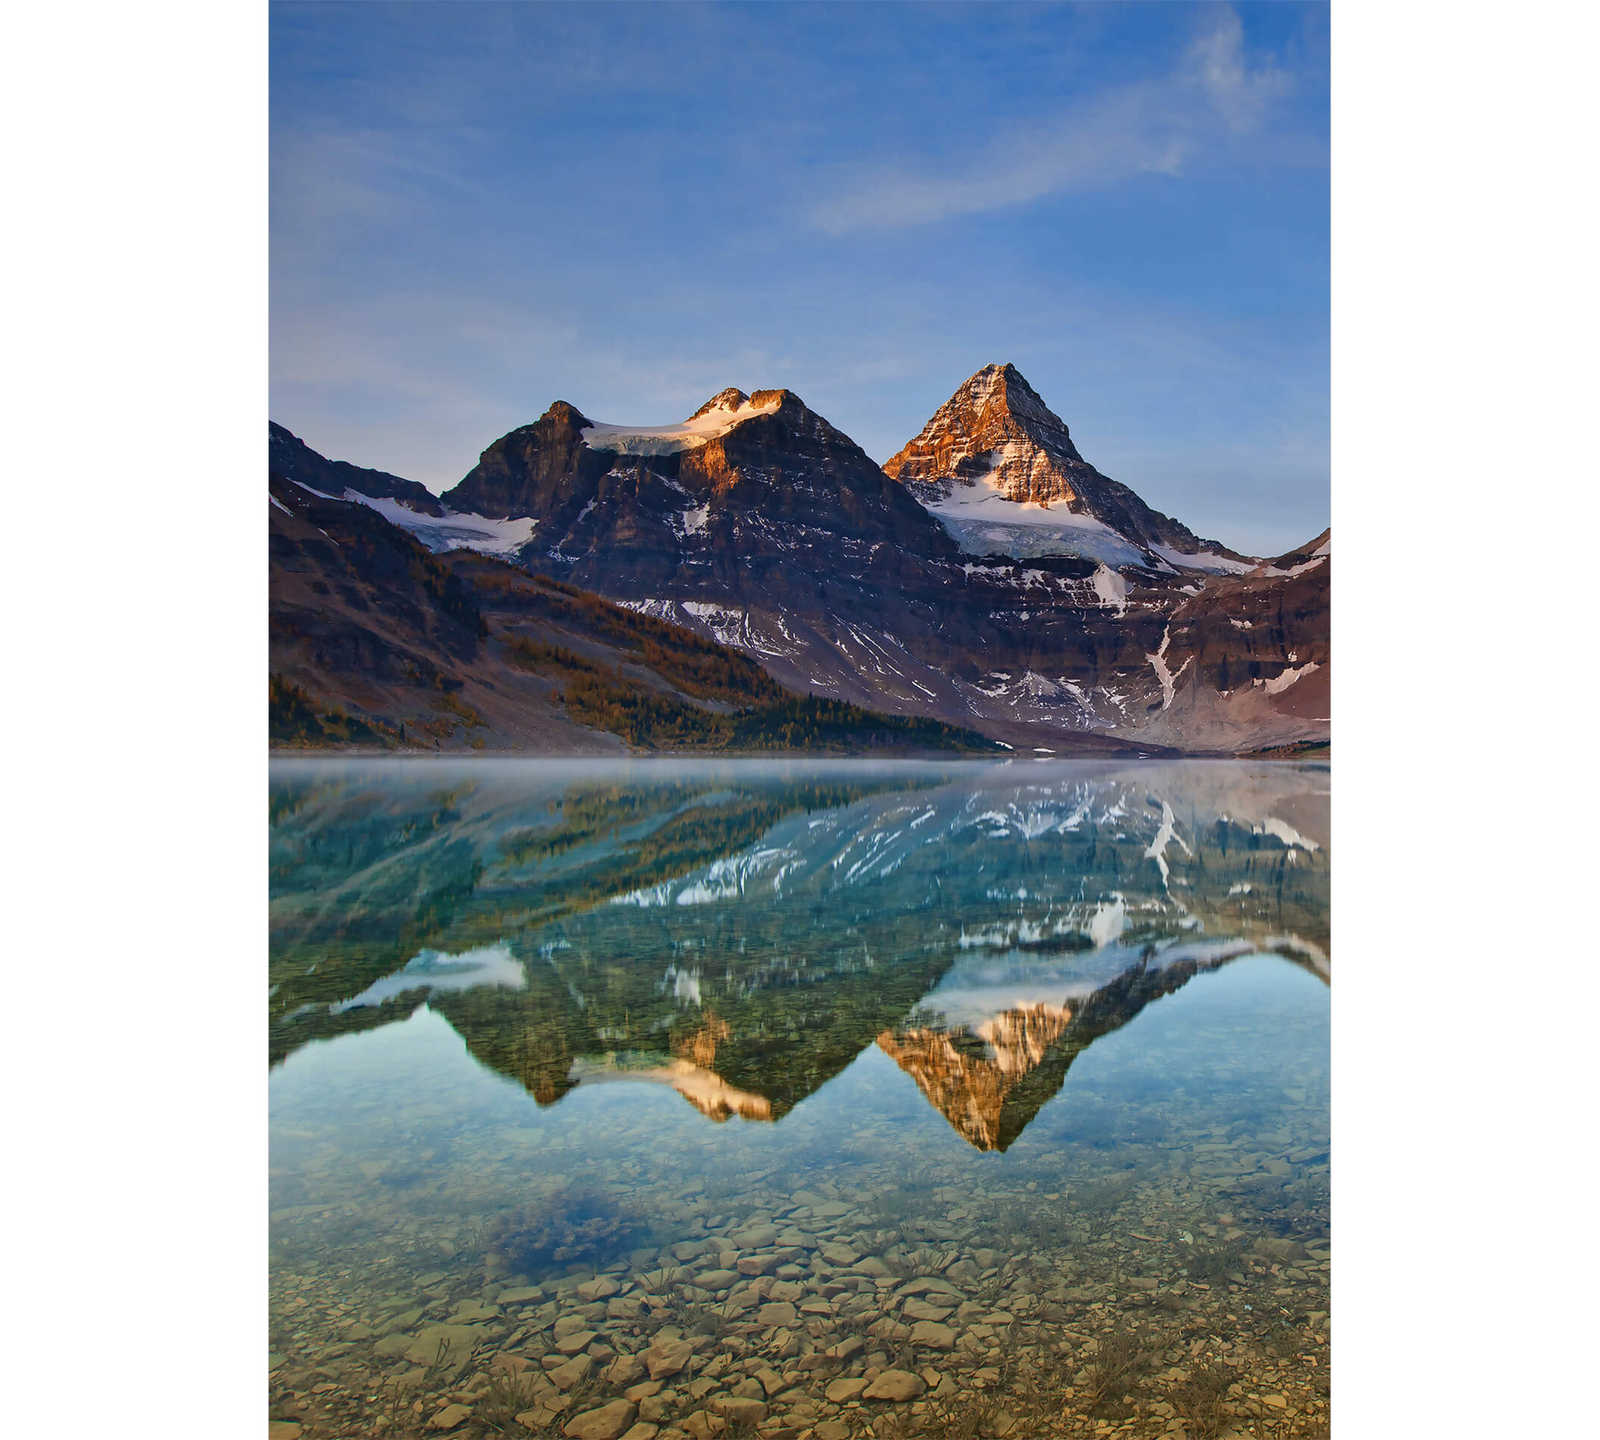 Fototapete See und Berge in Kanada – Braun, Blau, Weiß
